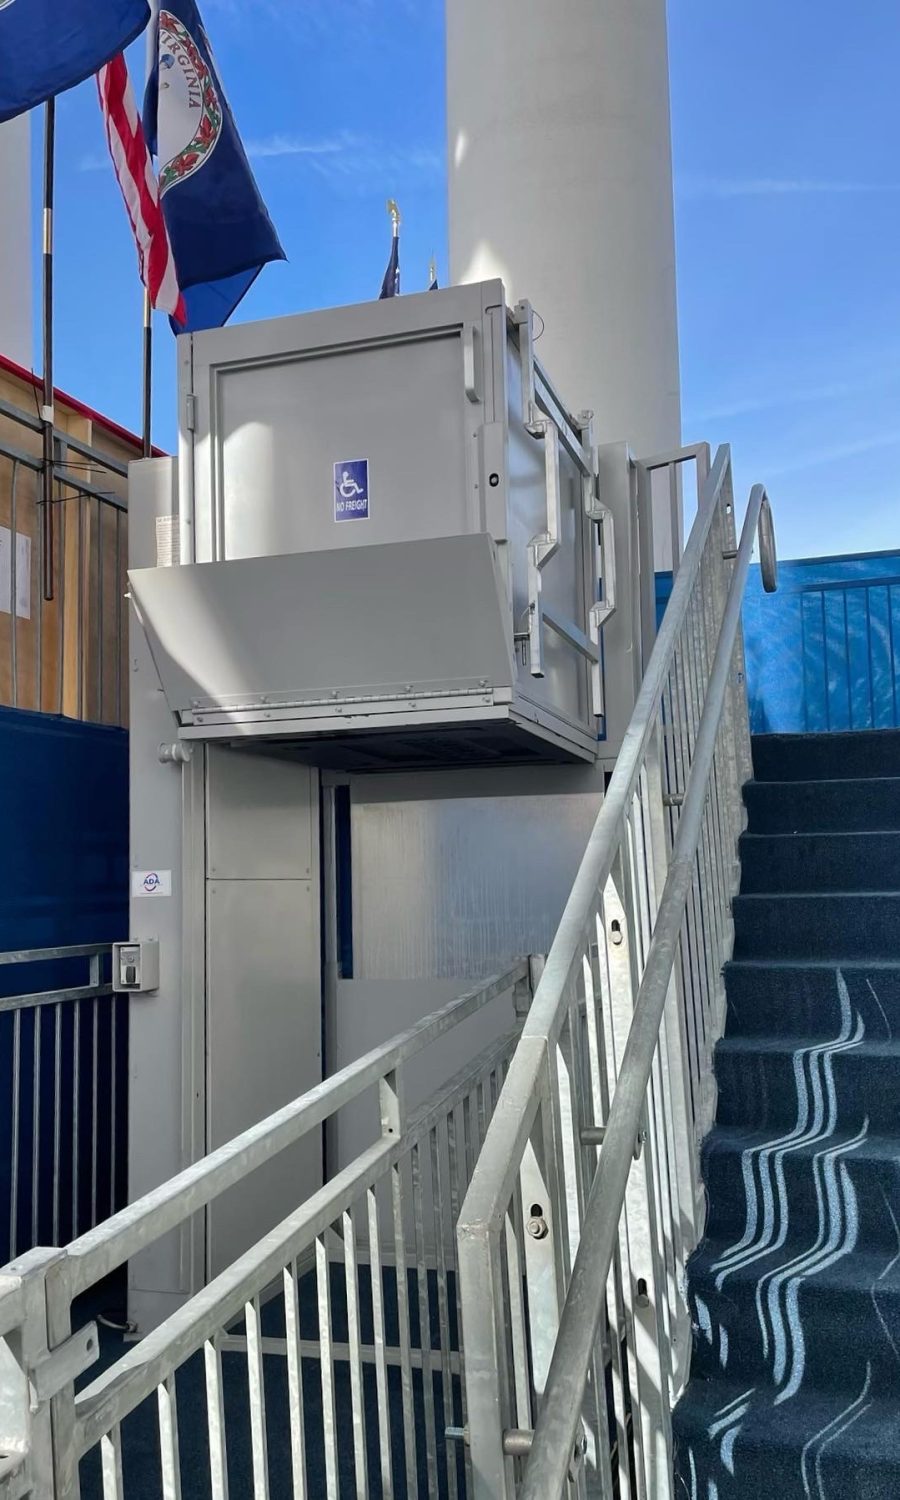 6' grey ADA lift rental at the Virginia Gubernatorial Inauguration 2022